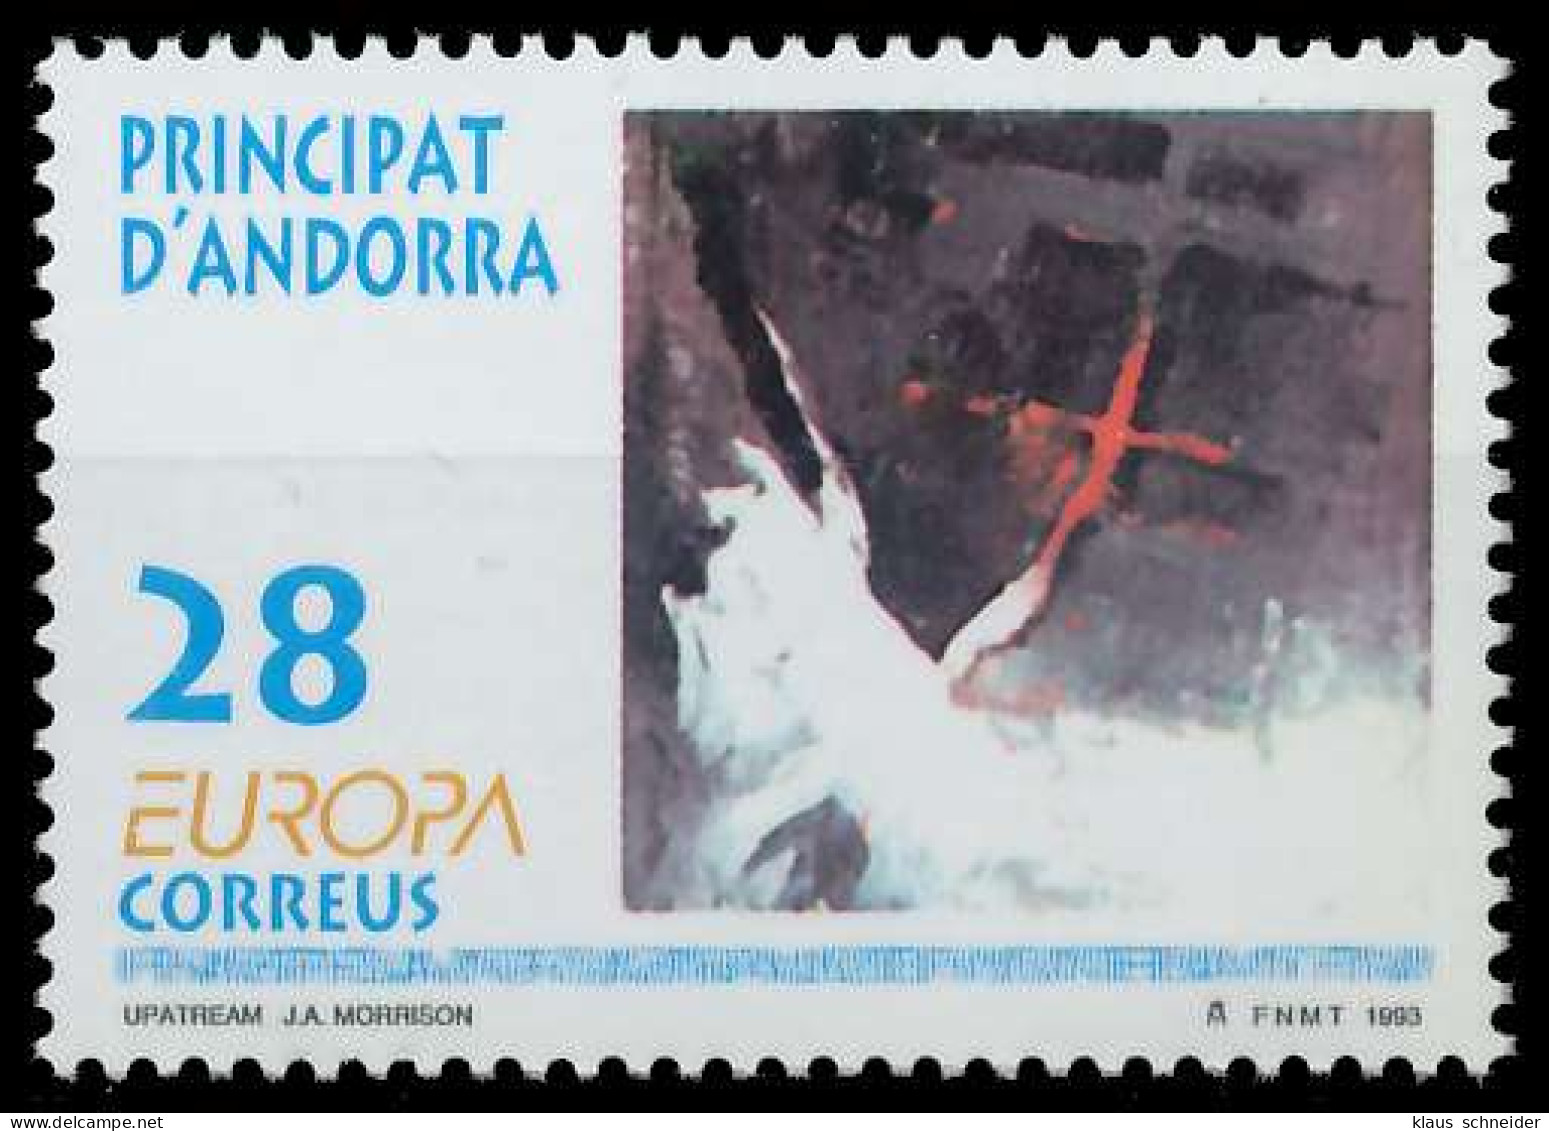 ANDORRA SPANISCHE POST 1990-2000 Nr 232 Postfrisch X5DAEAE - Nuevos